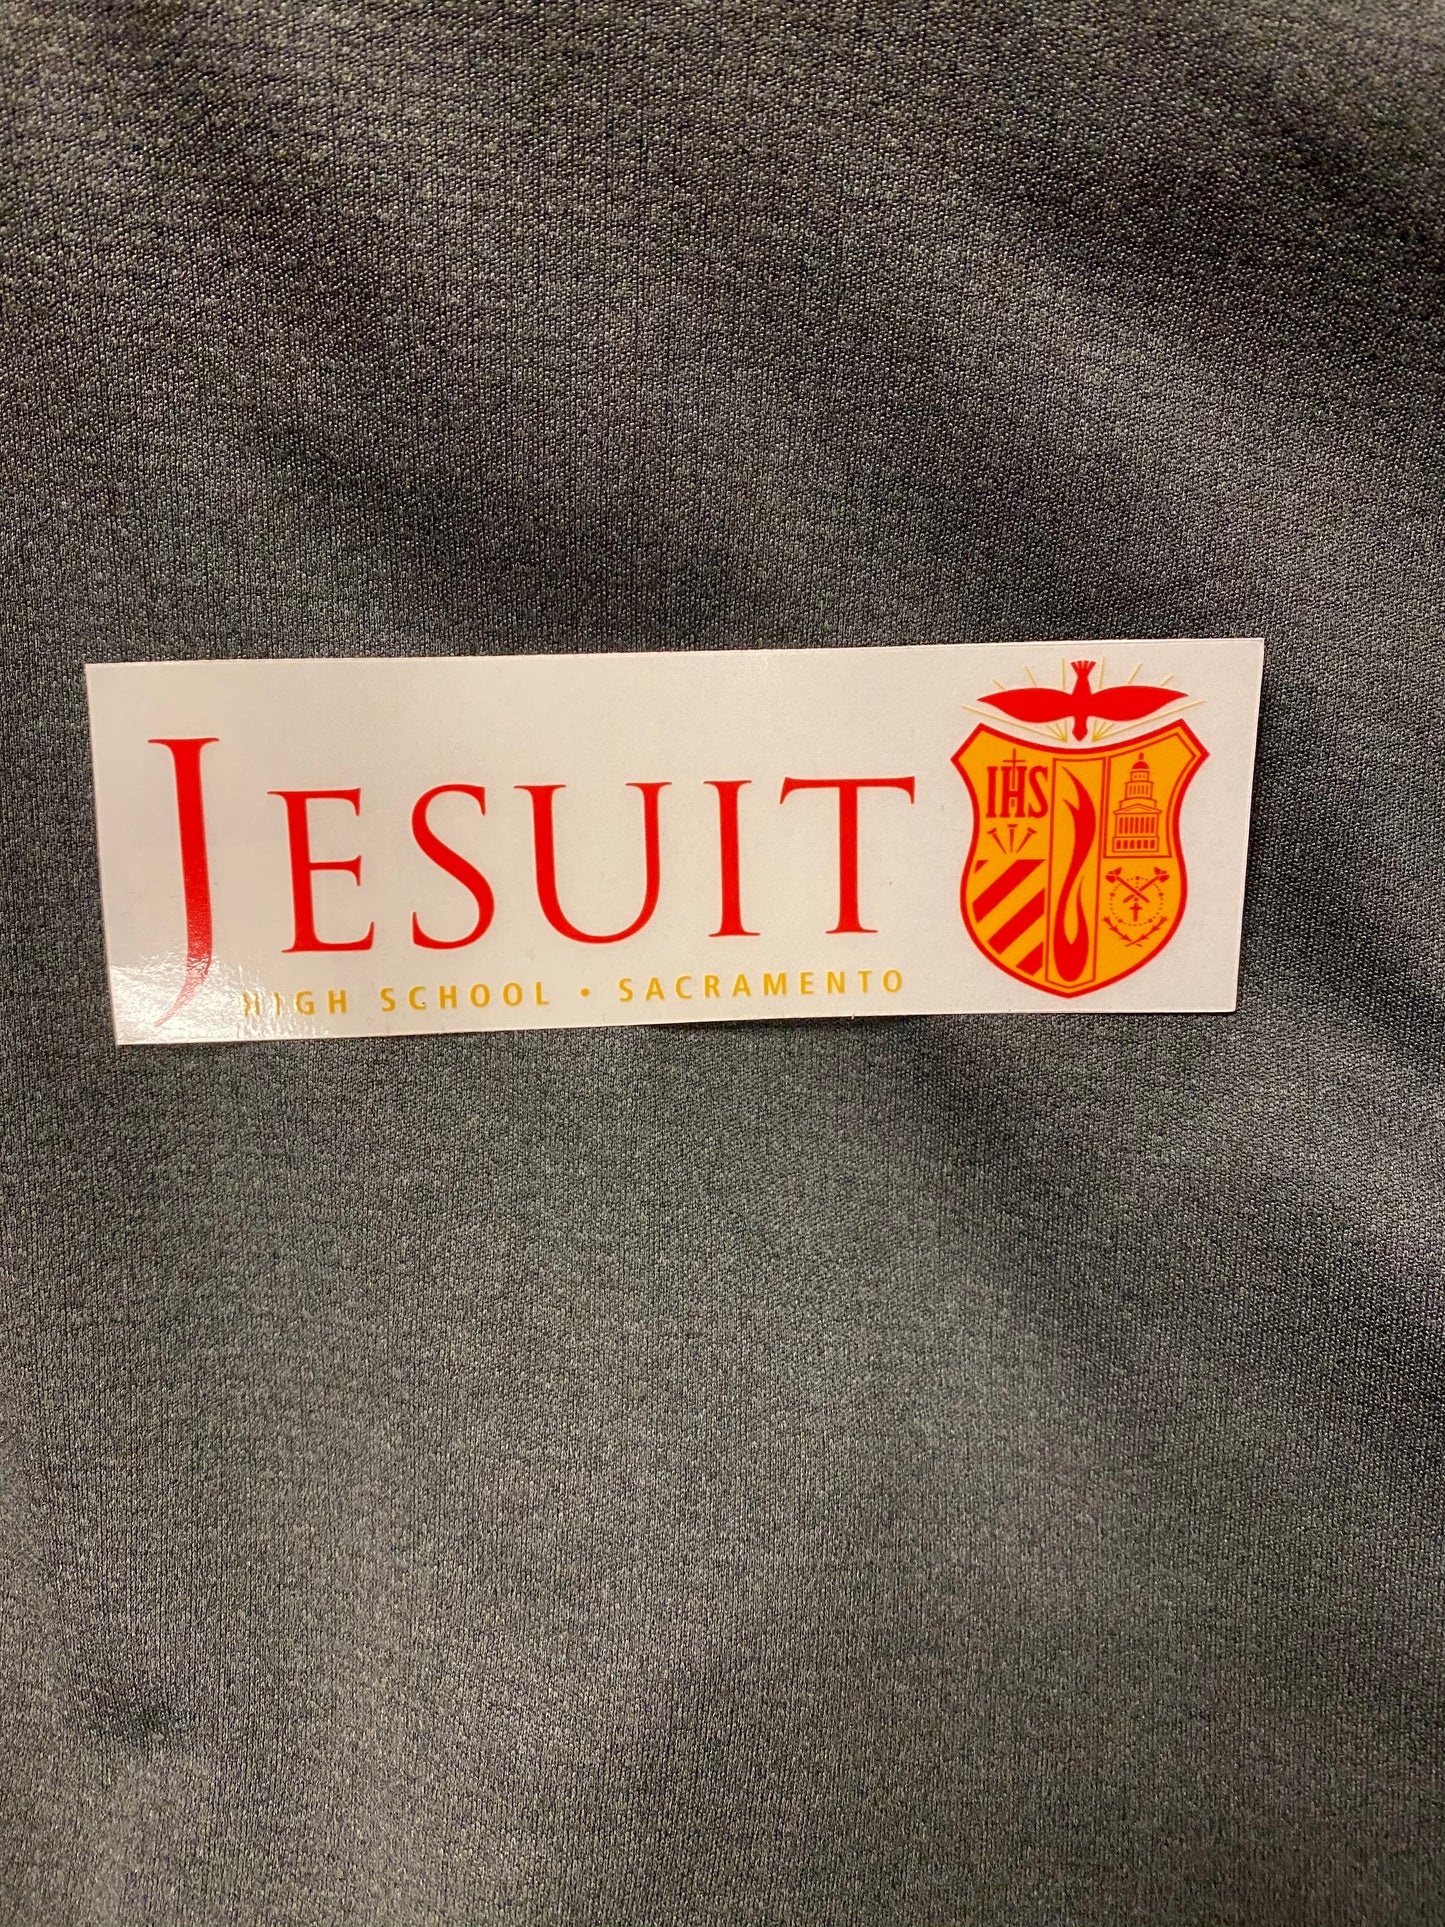 Jesuit Sacramento Seal